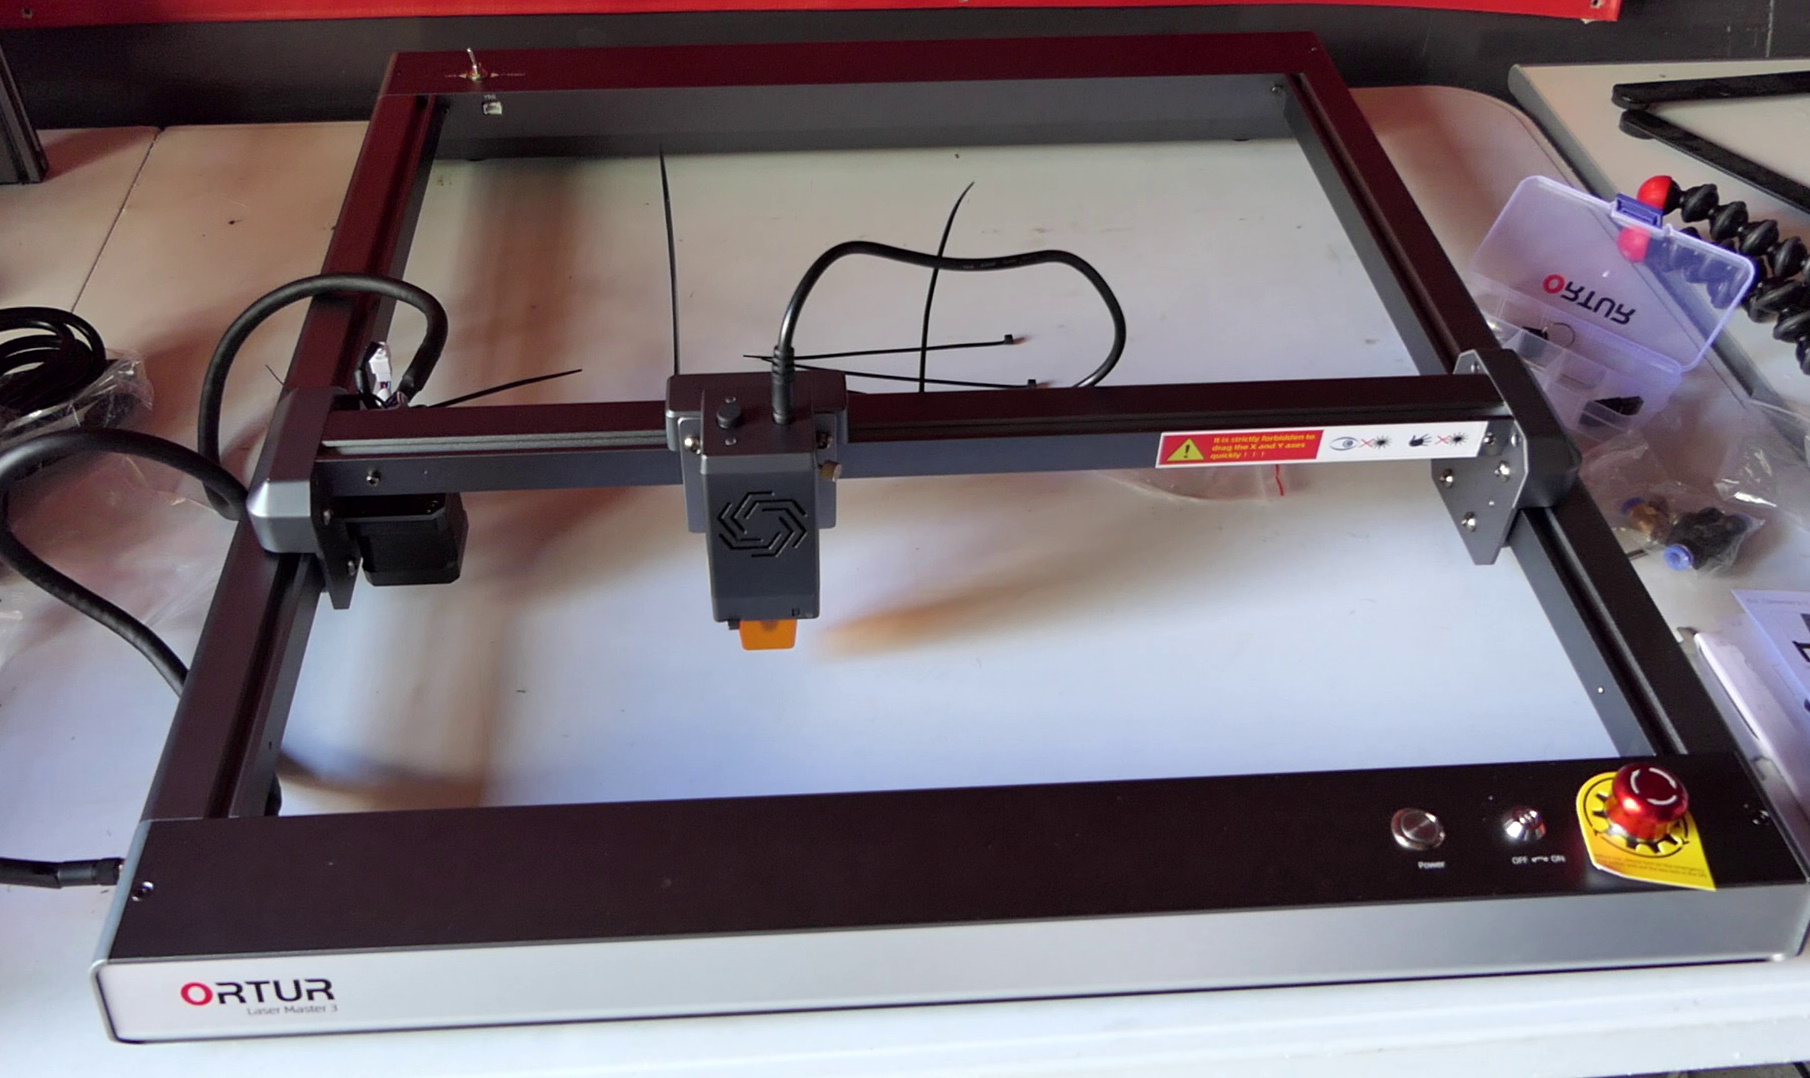 Kit d'imprimante 3D de bricolage support Linux, Windows osx avec jeu de  Têtes de gravure au laser - Chine Bureau de l'imprimante 3D, bricolage imprimante  3D